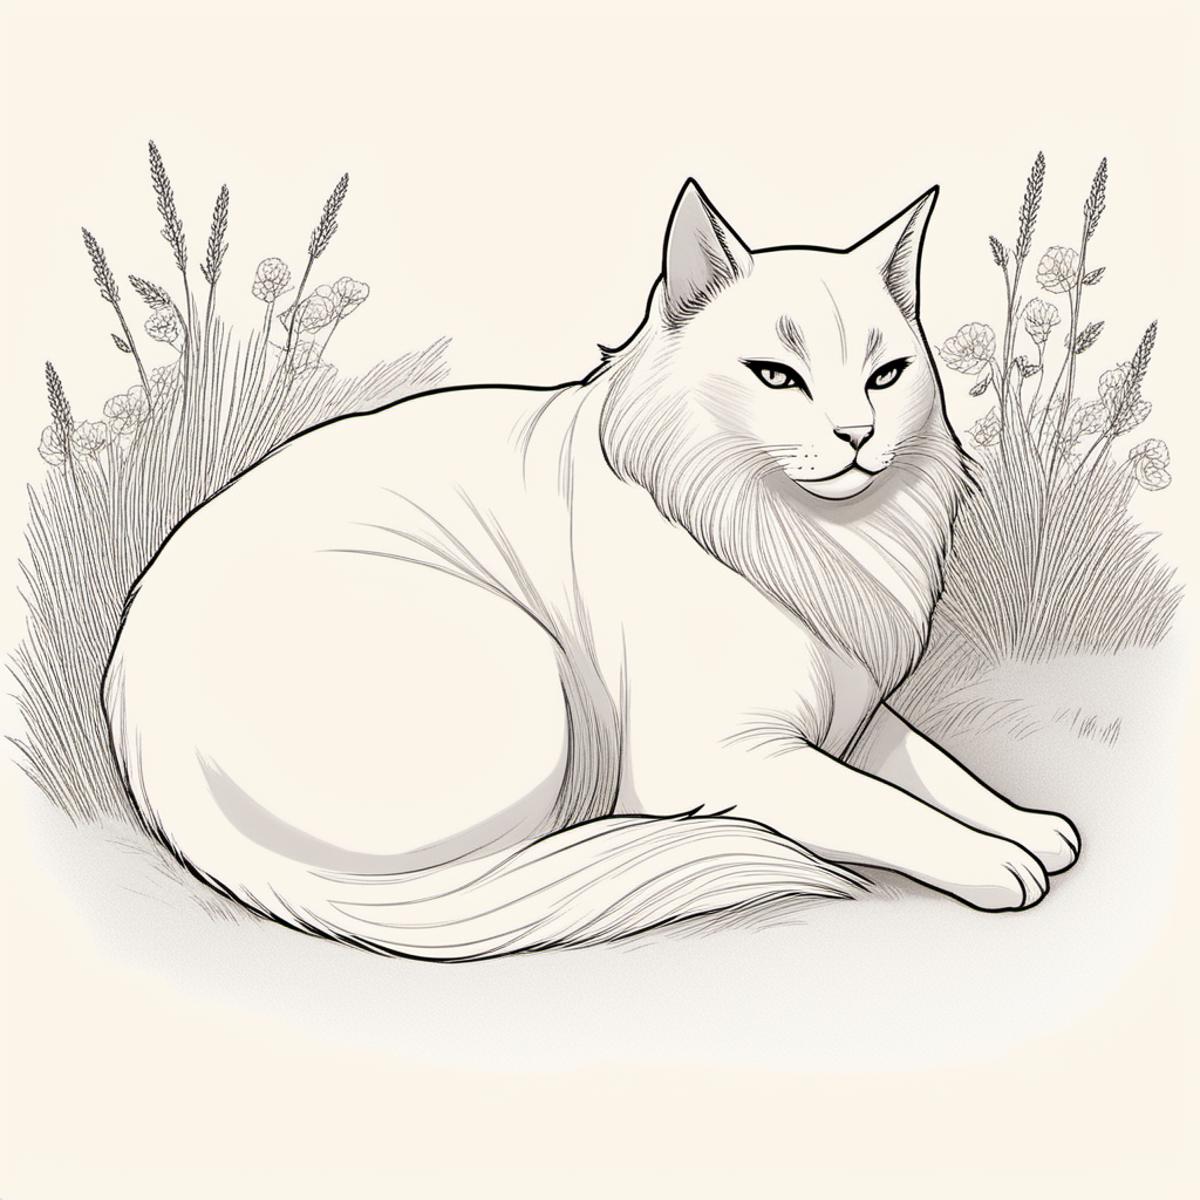 jsbw style,a fat cat lying in grass